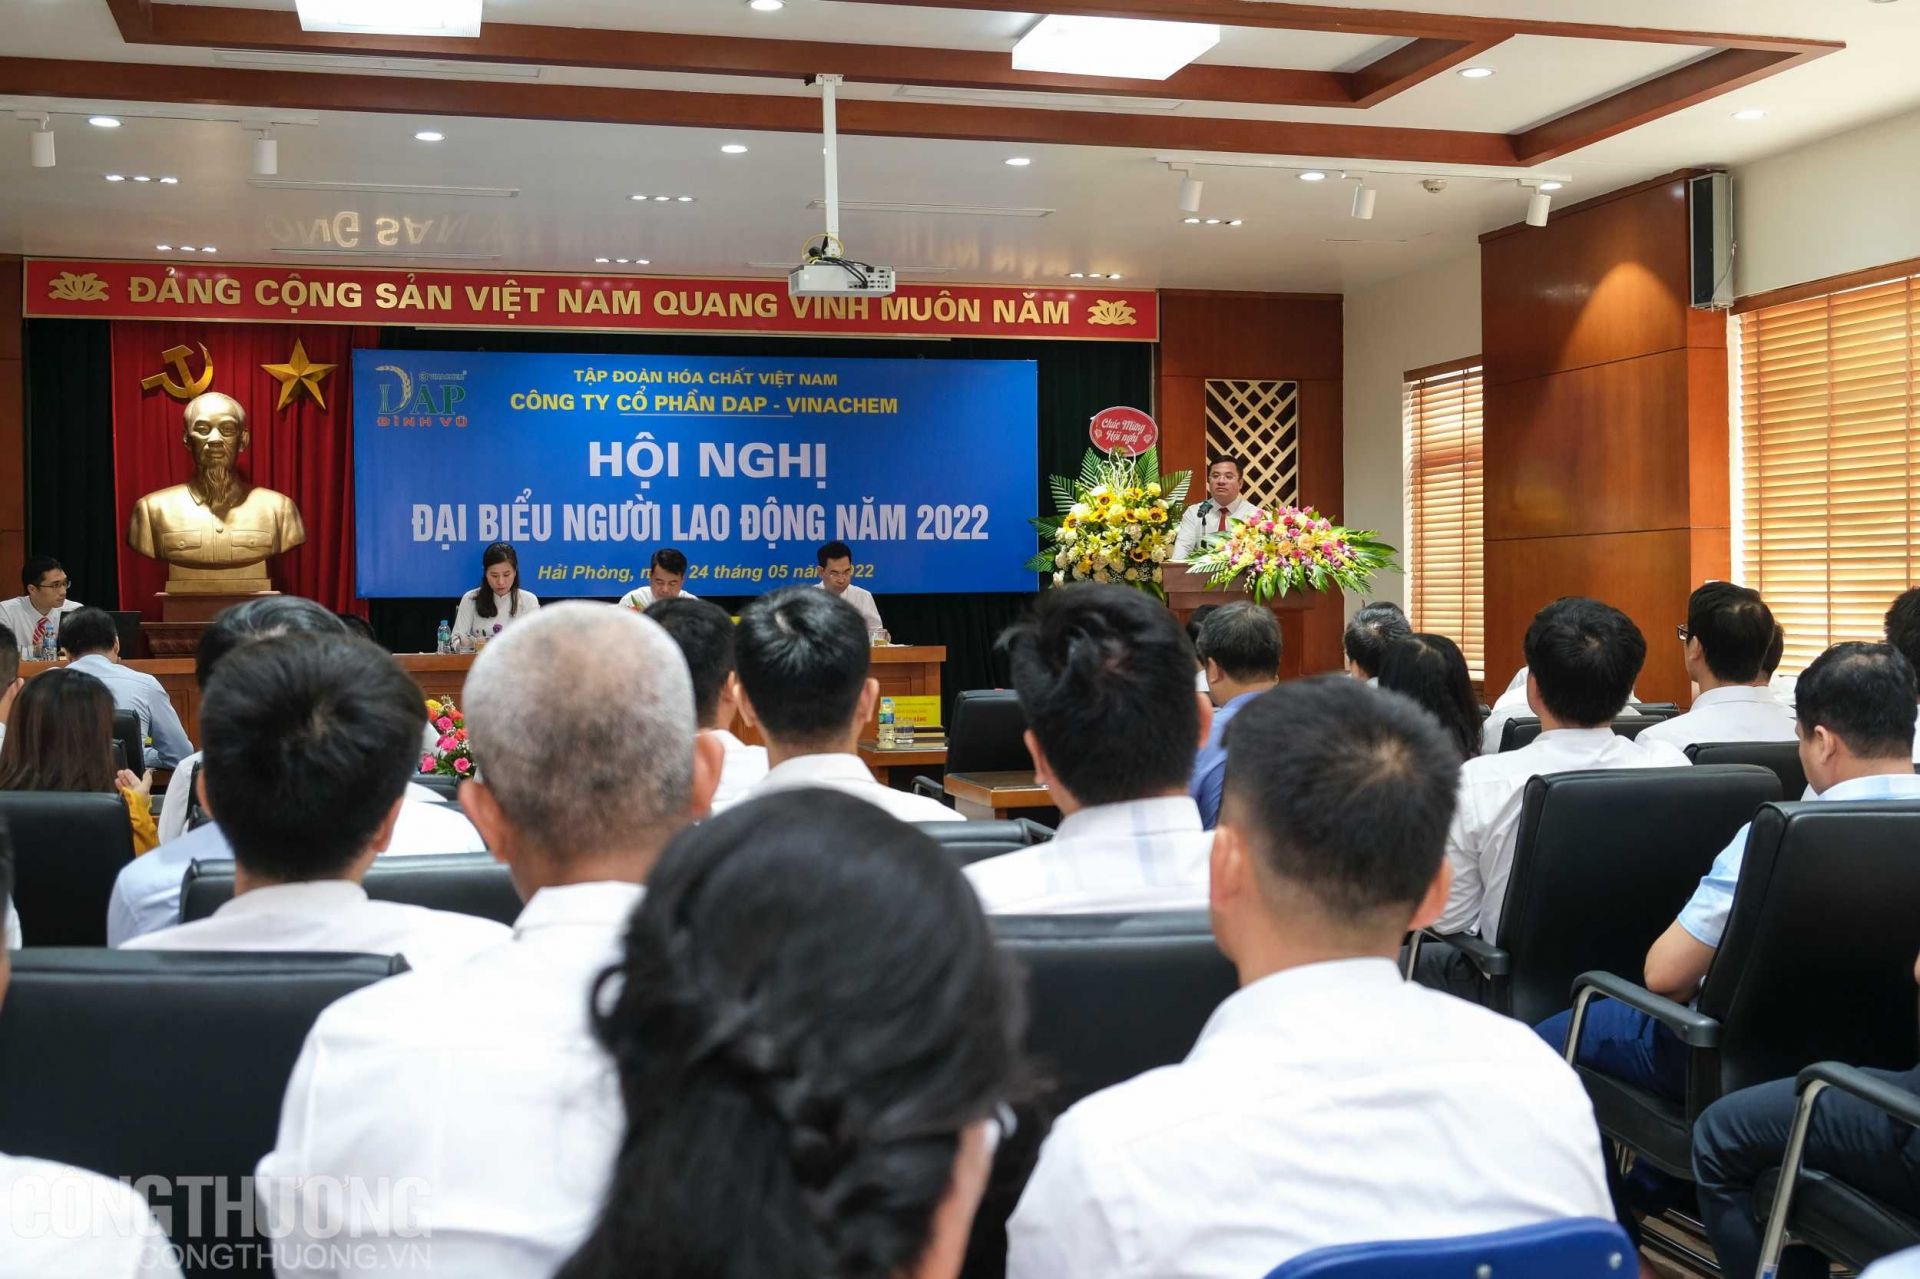 Ông Phùng Quang Hiệp - Tổng Giám đốc Tập đoàn Hóa chất Việt Nam chia sẻ tại Hội nghị